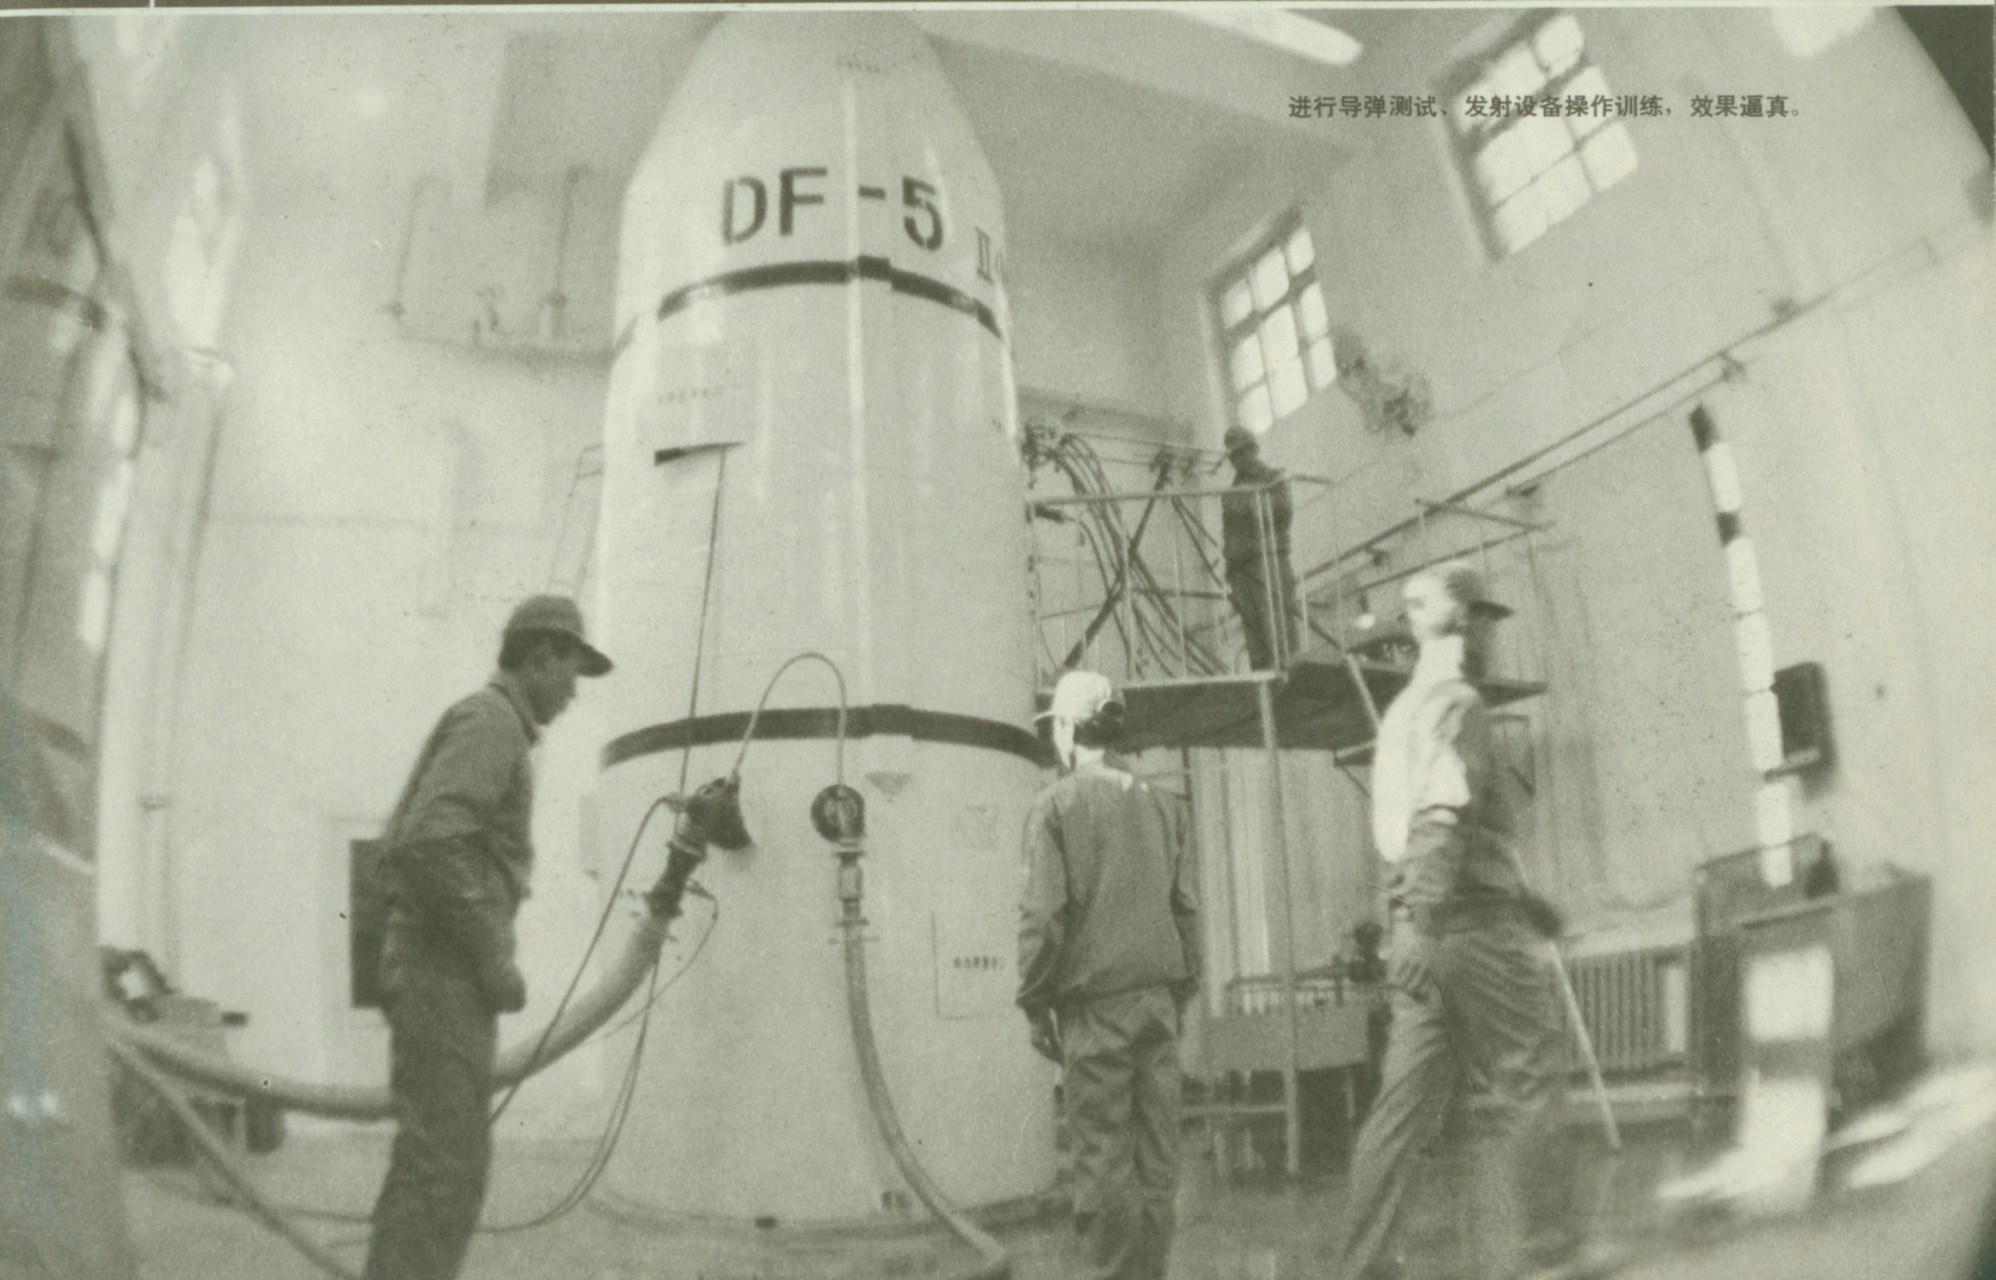 1990年3月解放军画报,东风-5号洲际导弹模拟系统